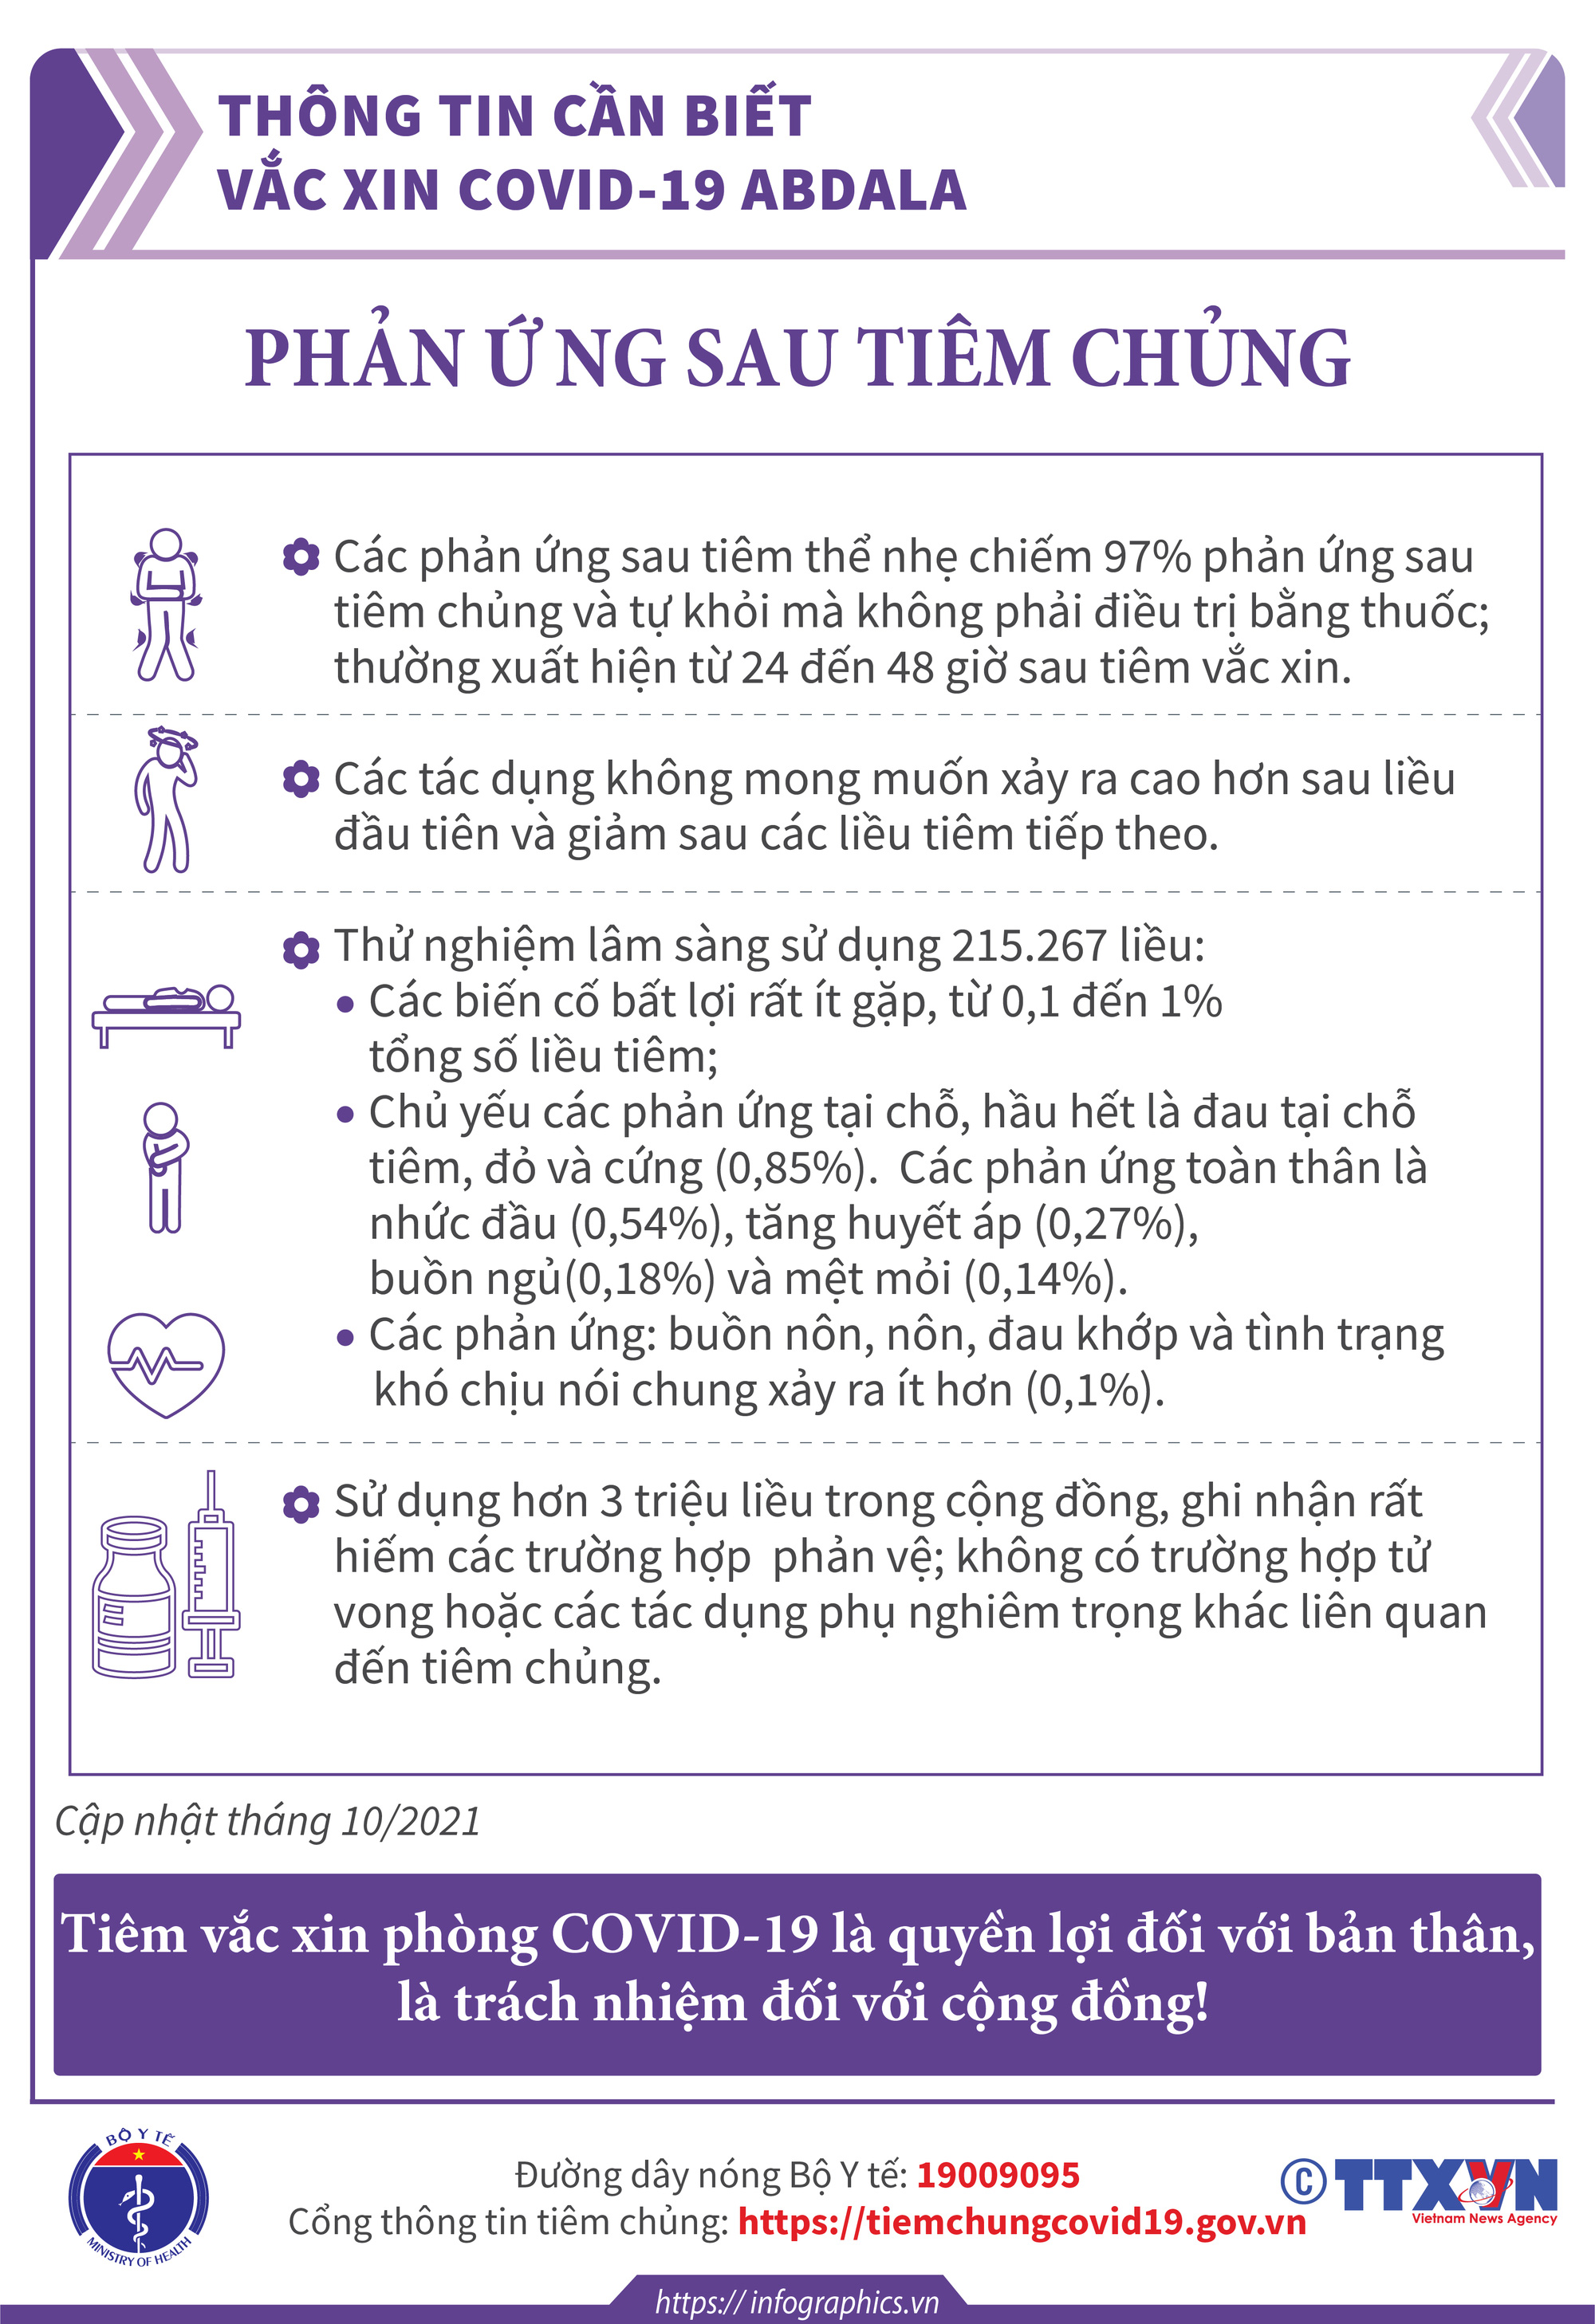 [Infographic] Thông tin cần biết về 03 loại vaccine phòng COVID-19: Vaccine Hayat-Vax, vaccine Verocell, vaccine Abdala  - Ảnh 11.